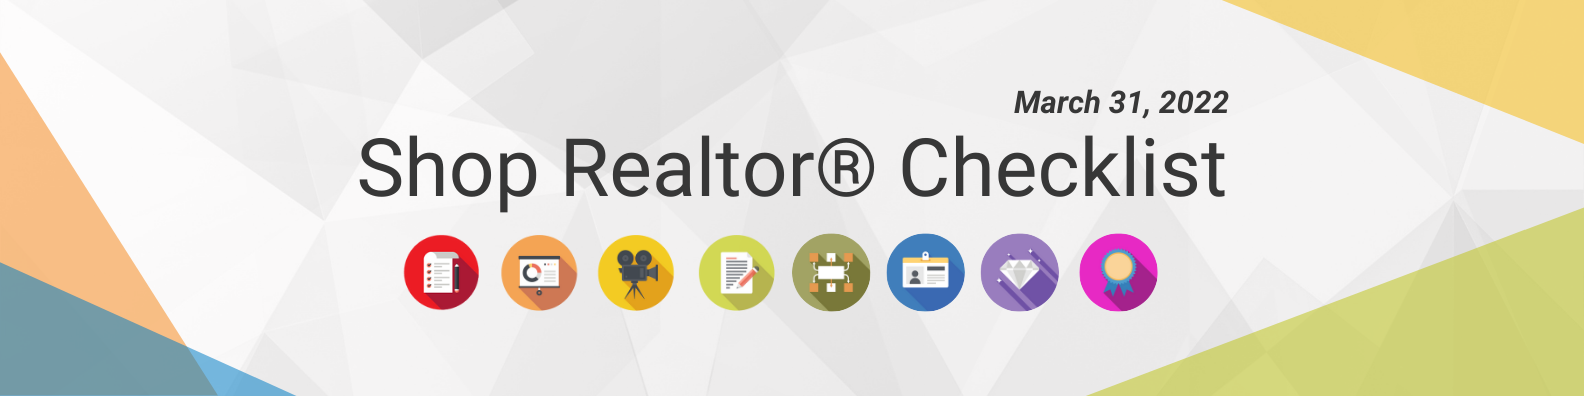 Shop Realtor® Checklist 3.31